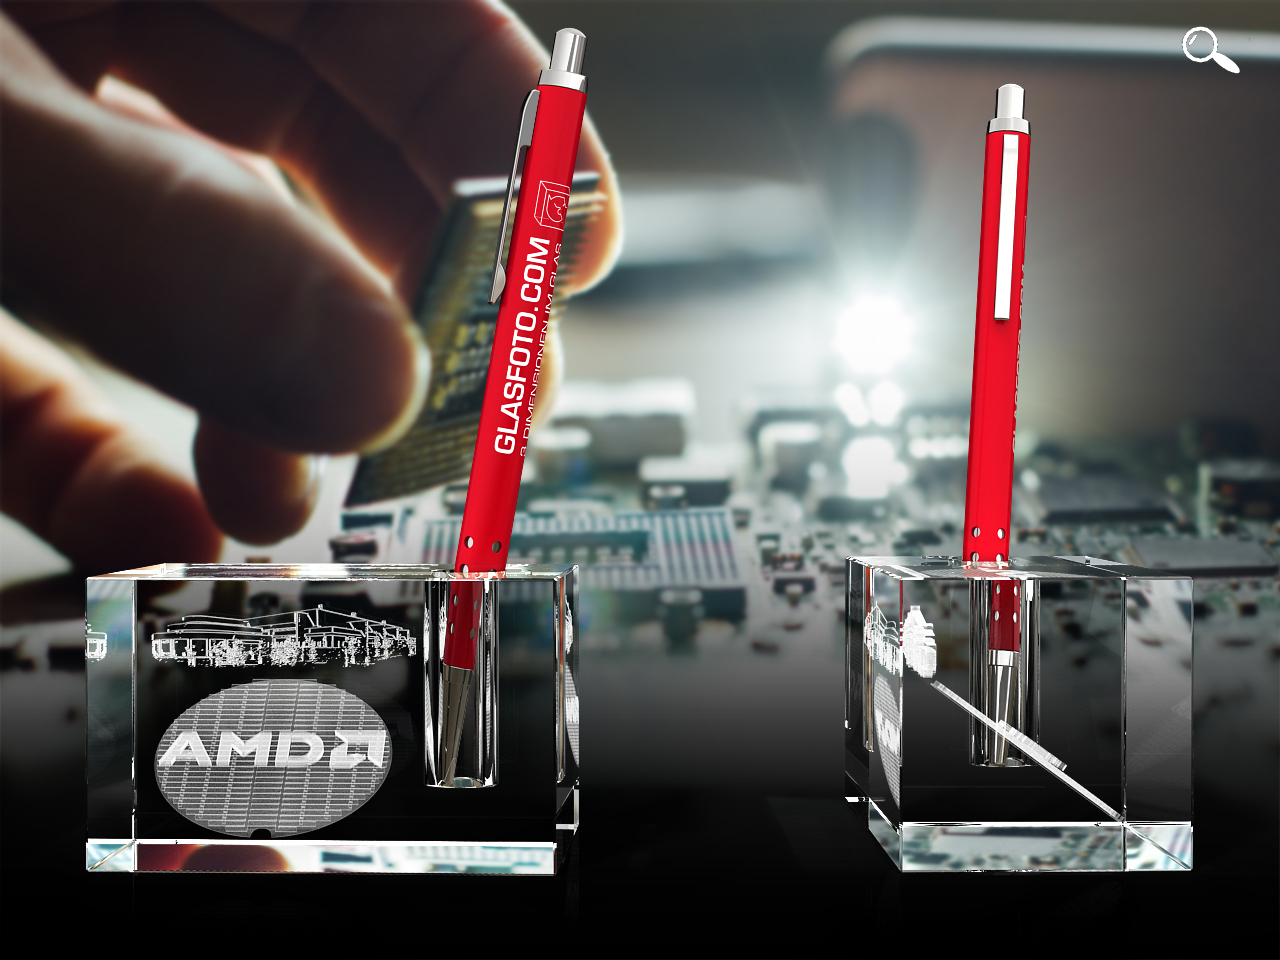 Mitarbeiter Motivation - AMD - Stifthalter